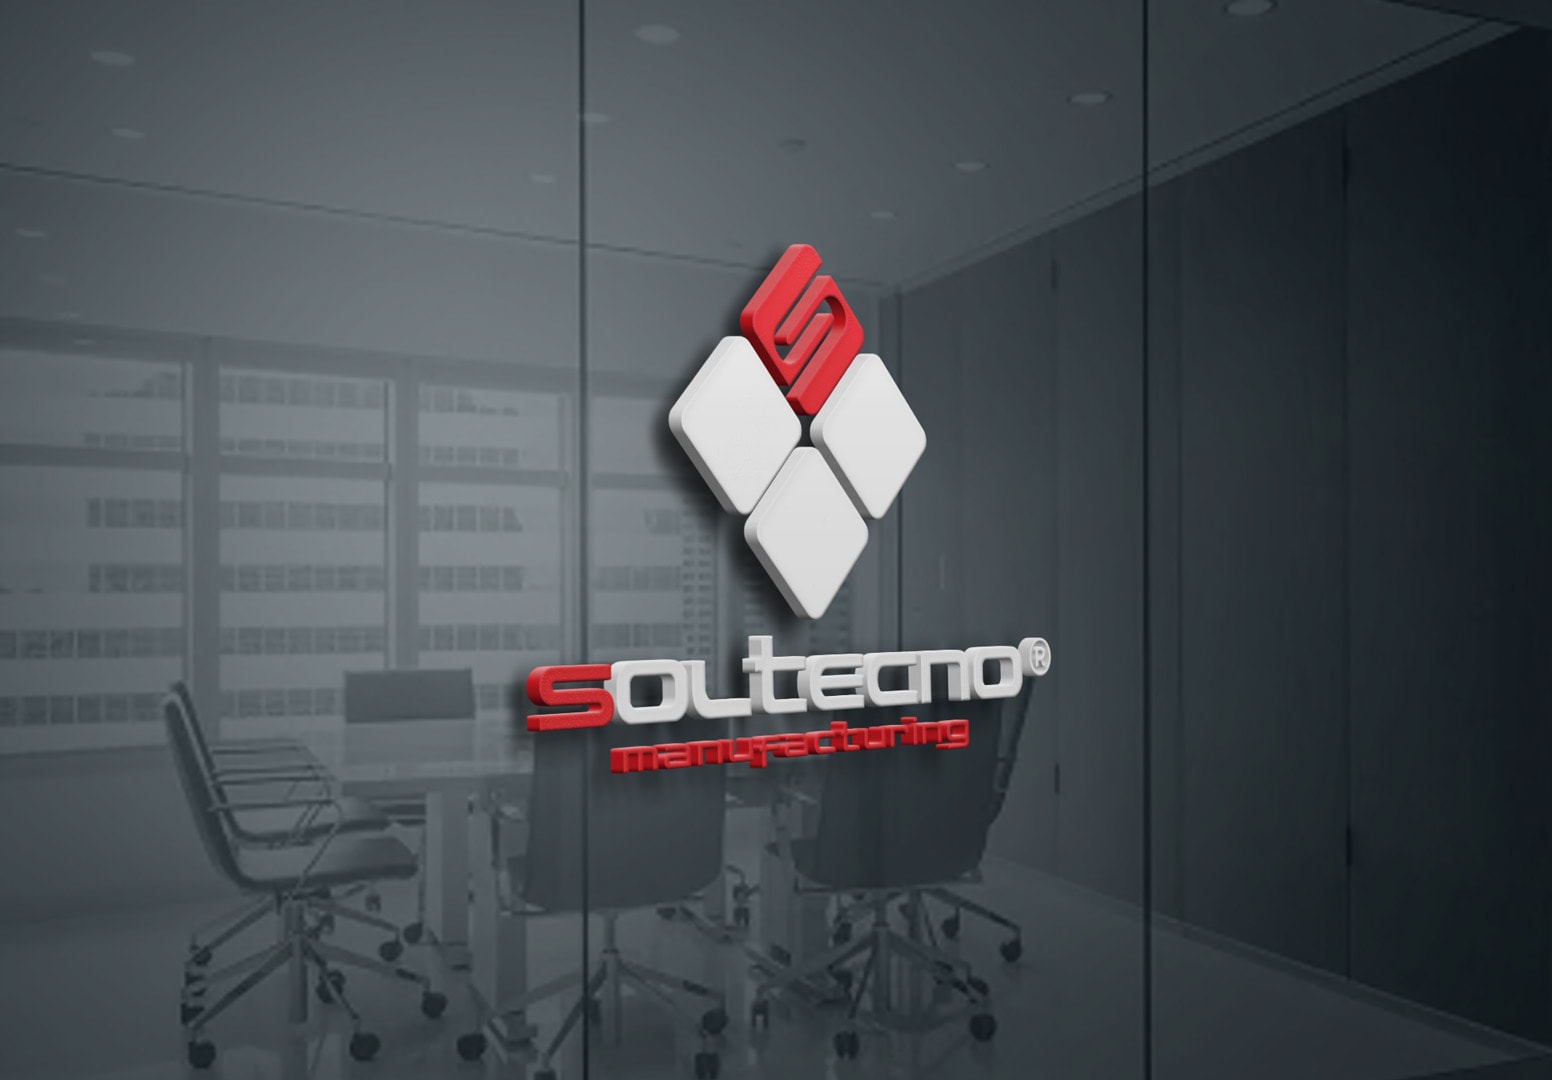 Soltecno - Design by DelfiAdv